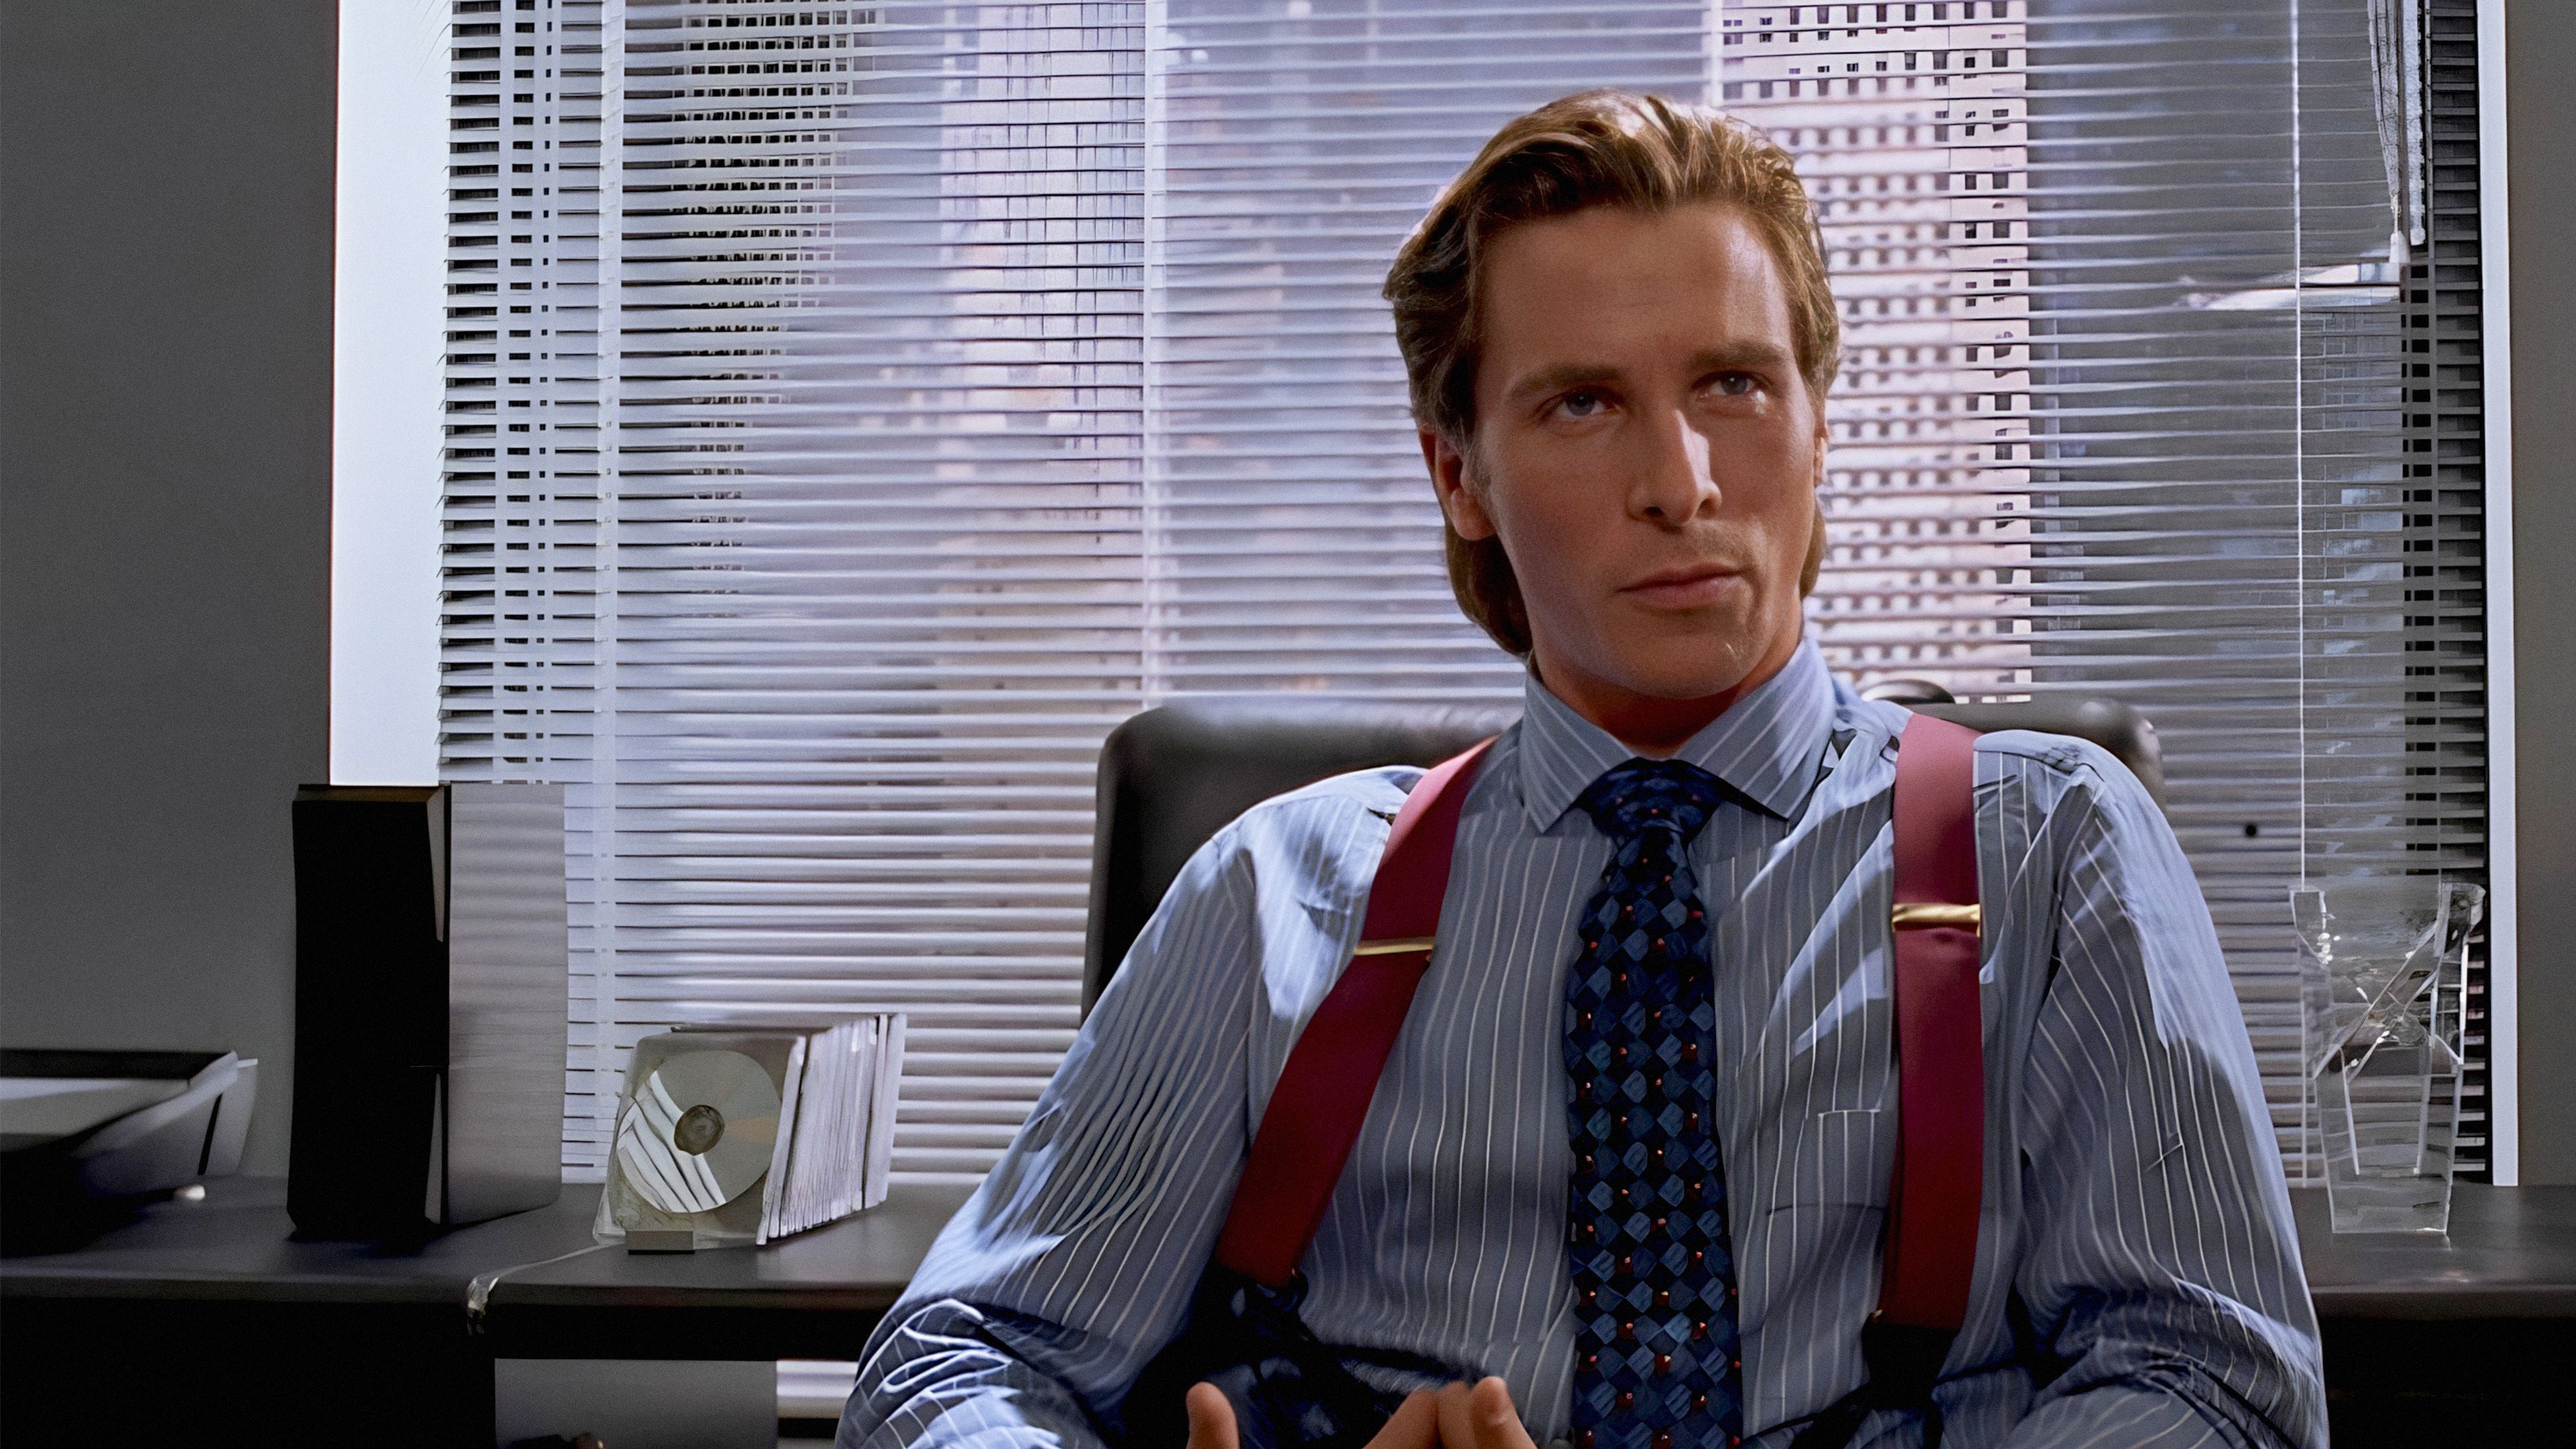 Christian Bale vào vai kẻ sát nhân tâm thần trong phim American Psycho